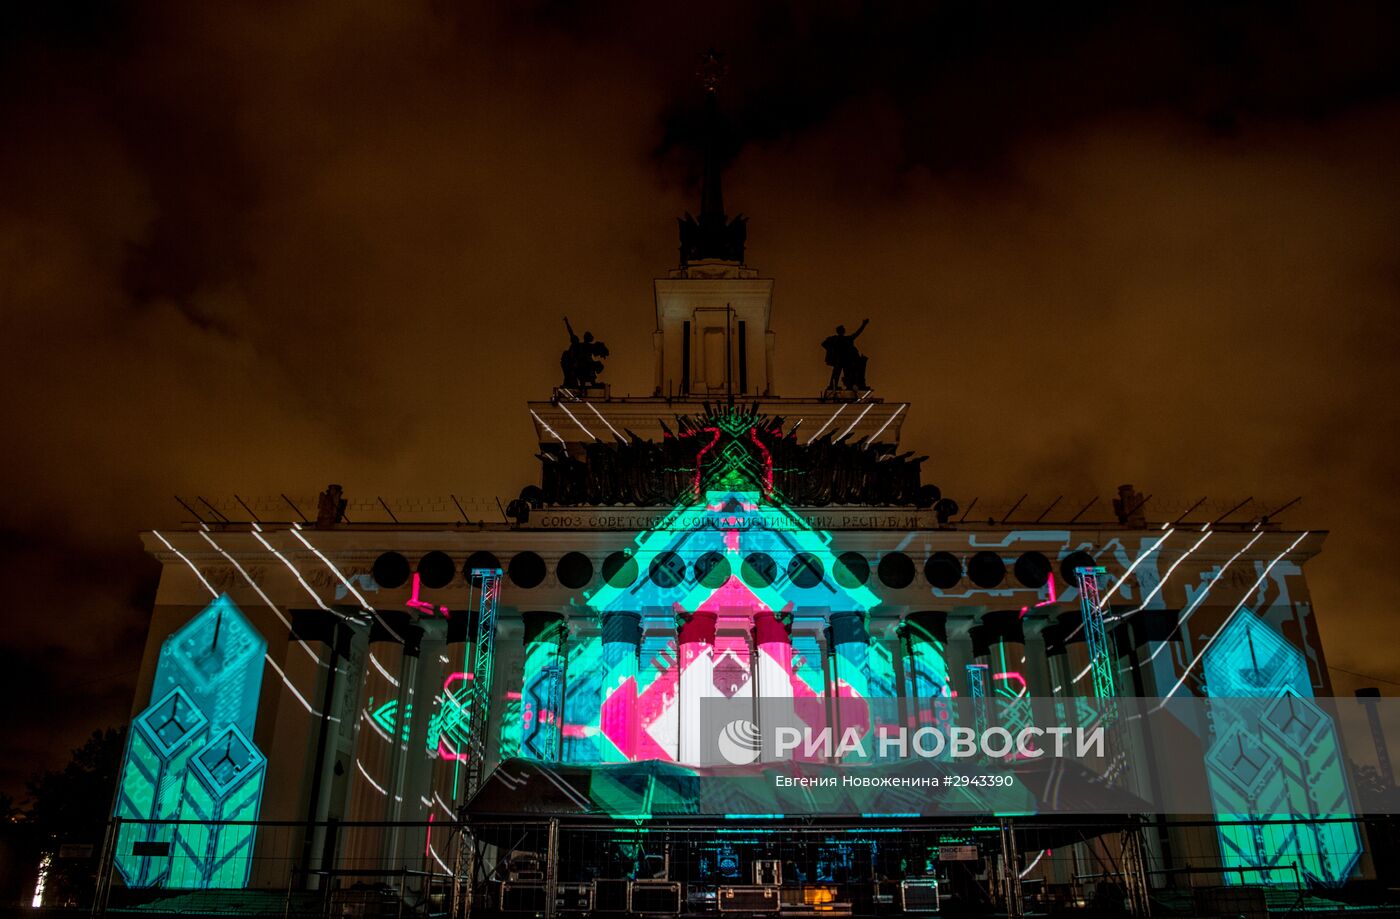 Московский международный фестиваль "Круг света" 2016. Открытие